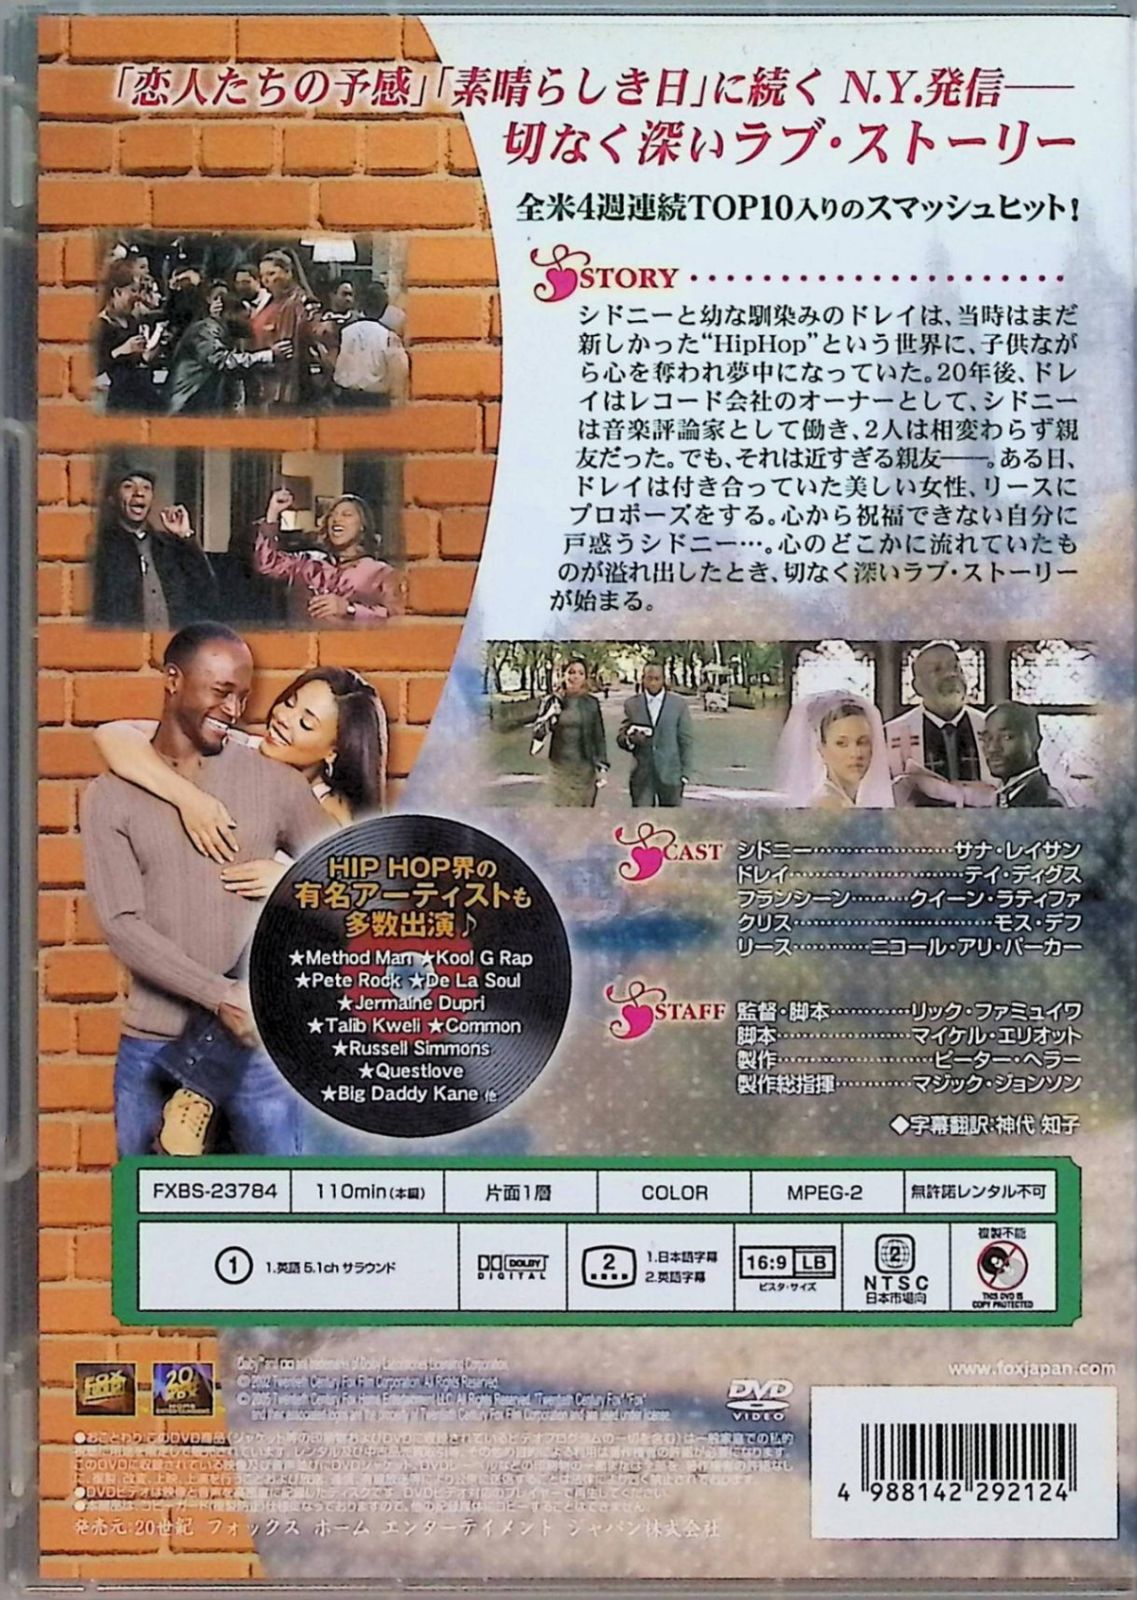 ブラウン・シュガー [DVD]